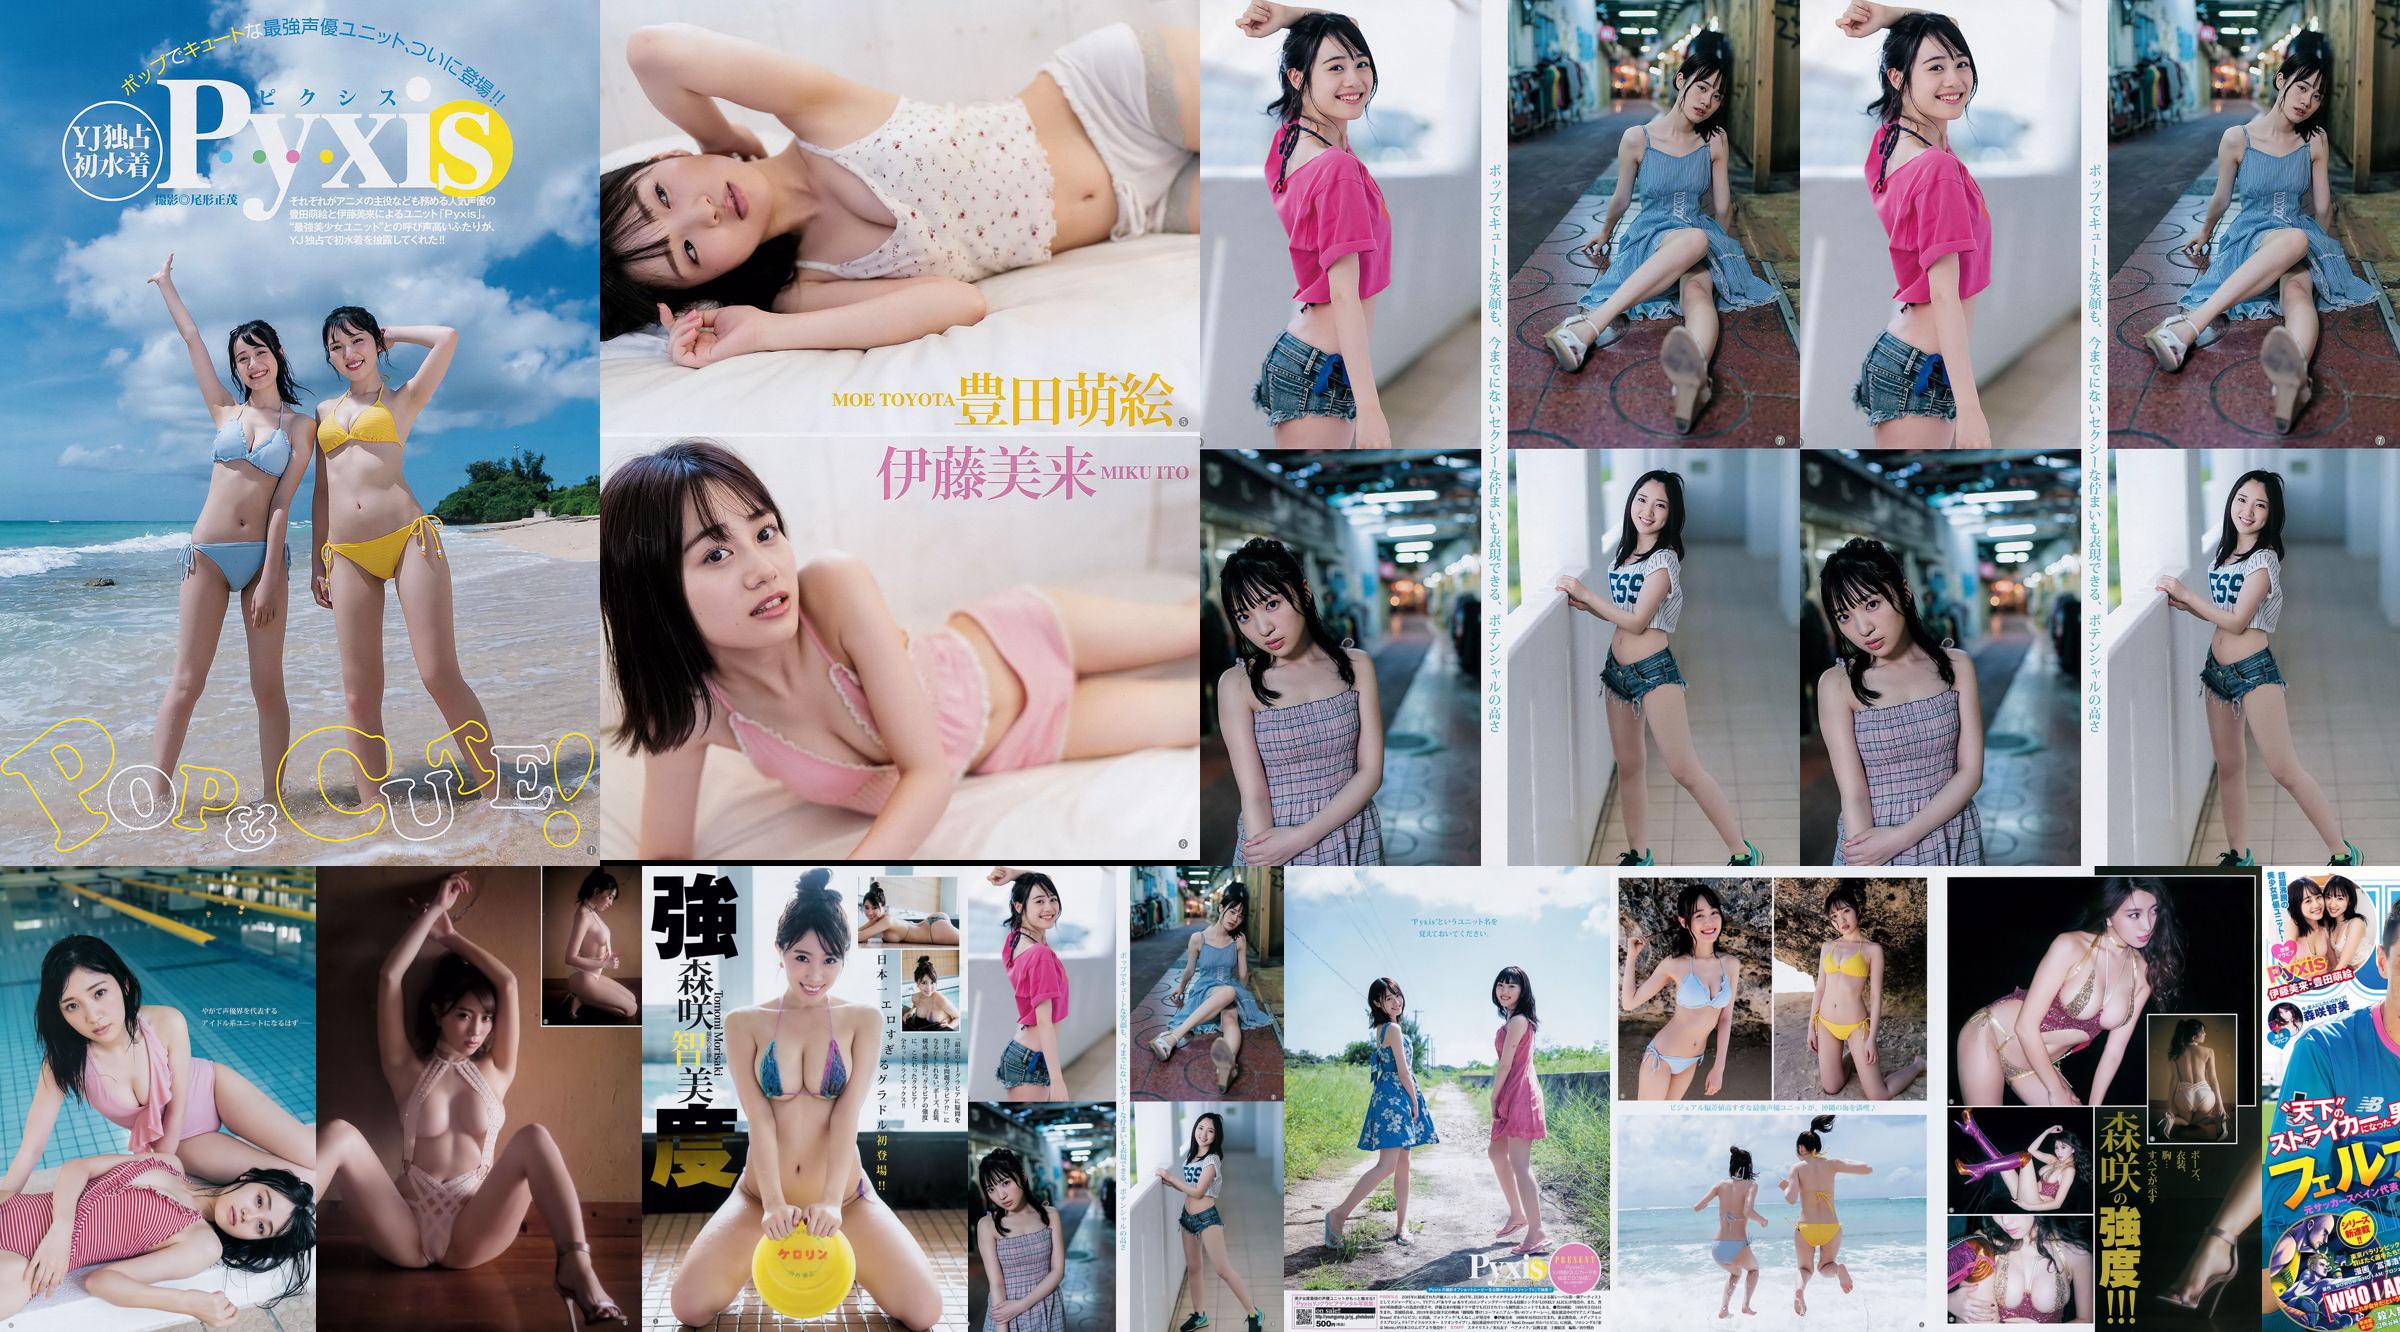 [Beautyleg] NO.851 Leg Model Miki Beauty Legs No.c0f6a2 Página 1